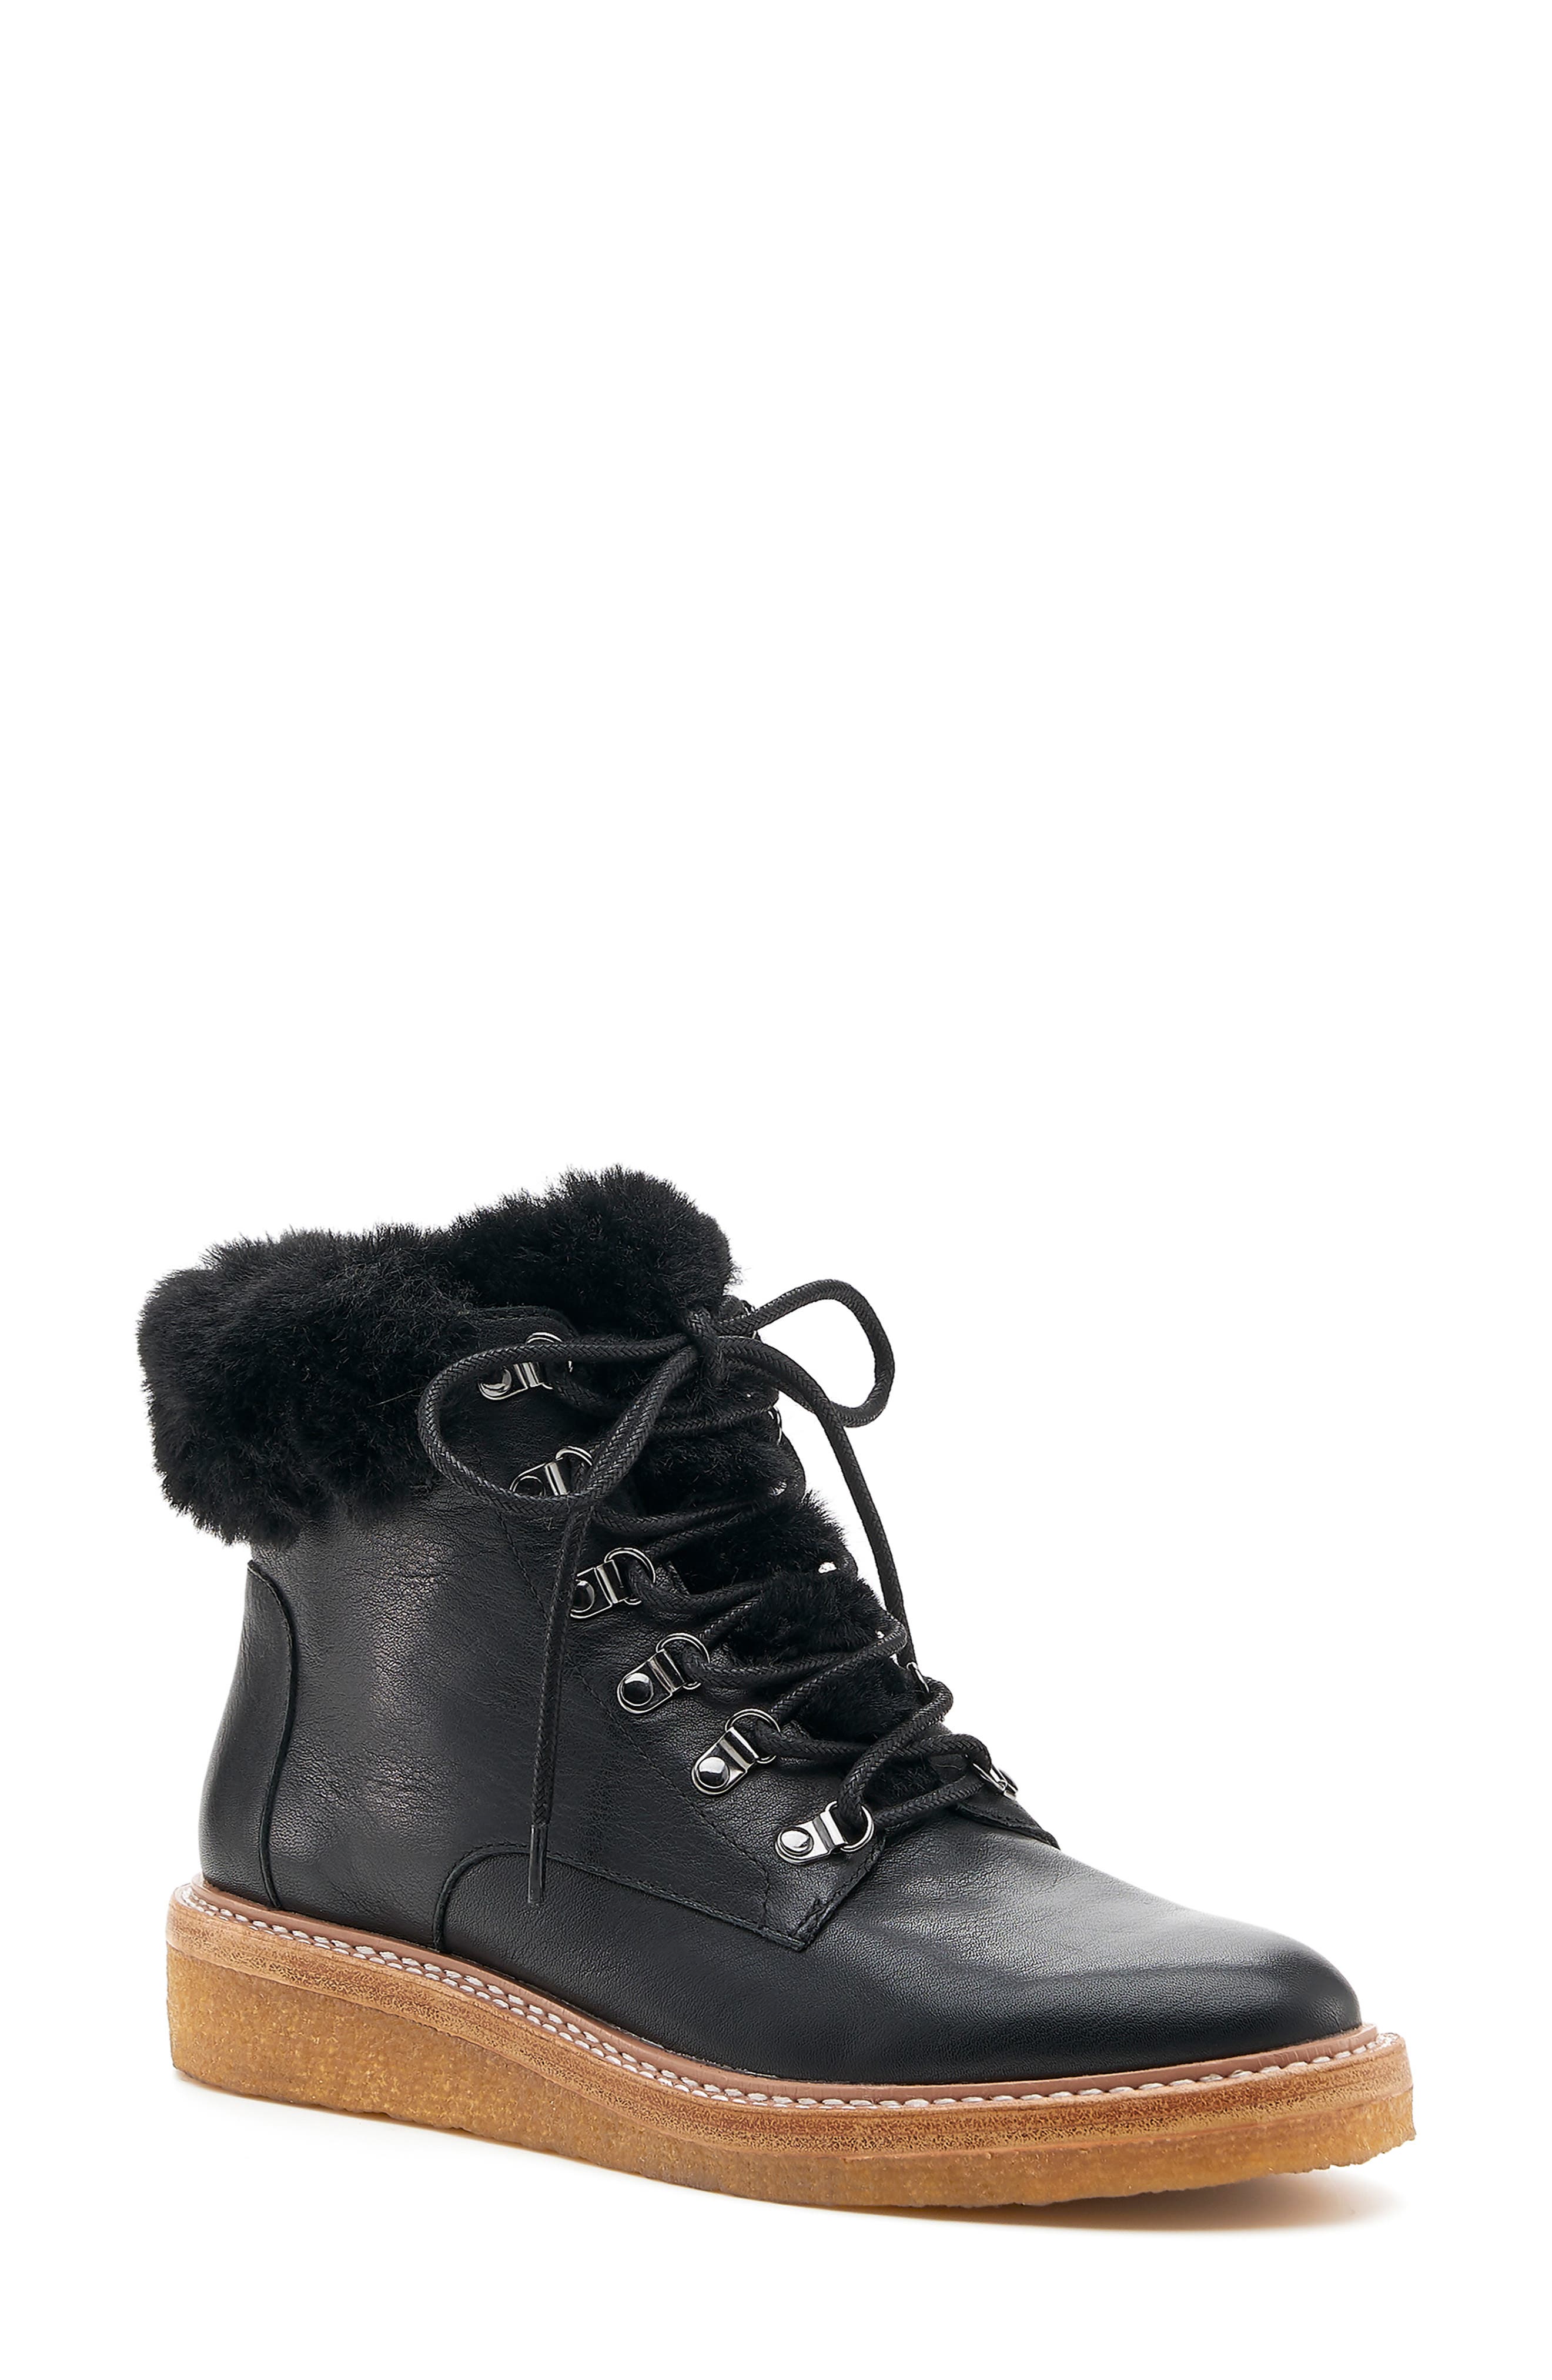 botkier Womens Winter Fur Hiker Boots